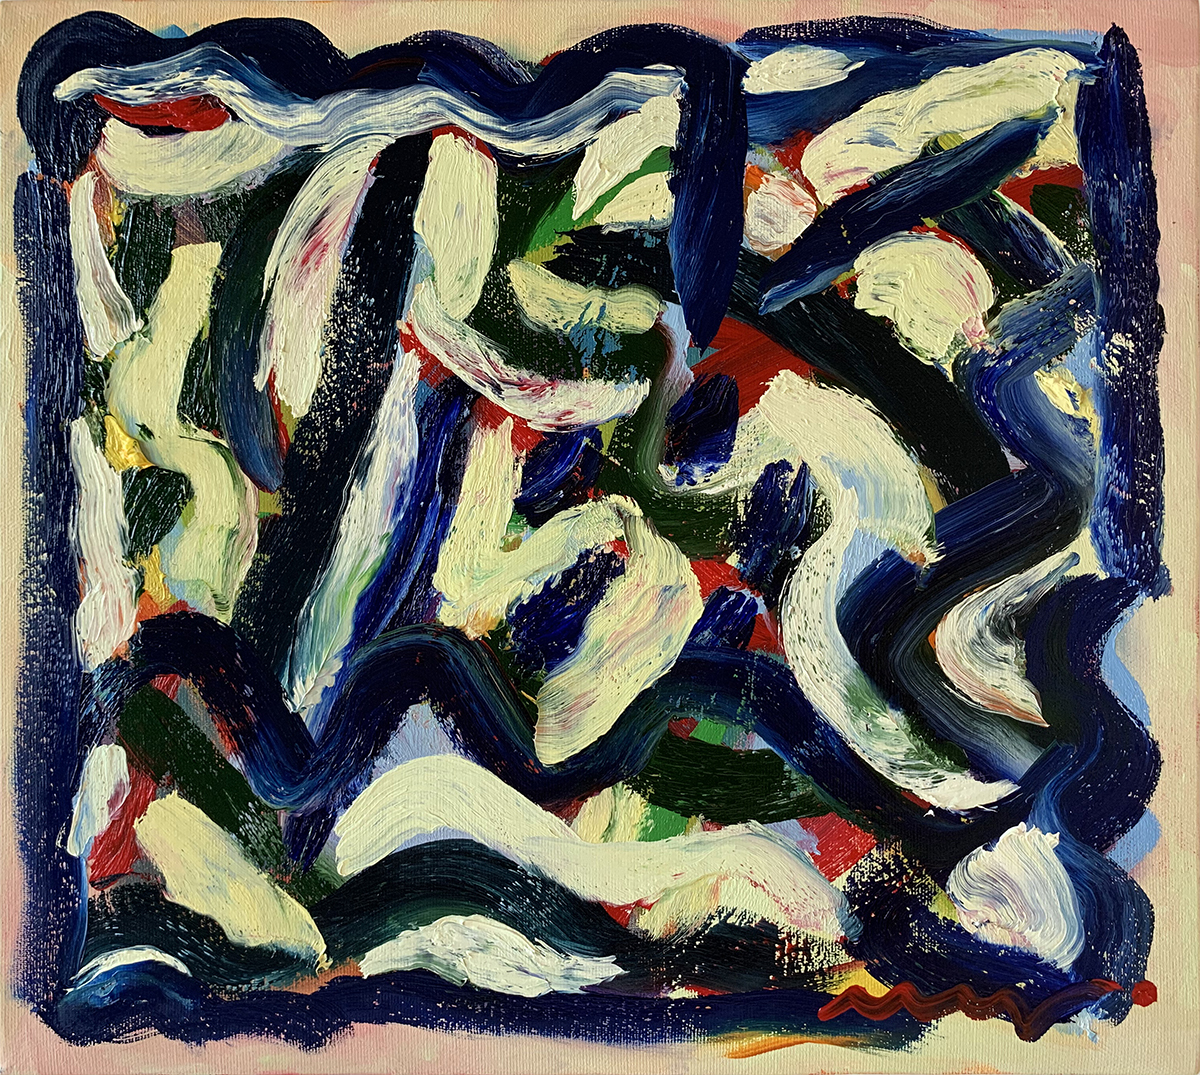 Composition III, Oil on Canvas, 36х40 cm. 2019